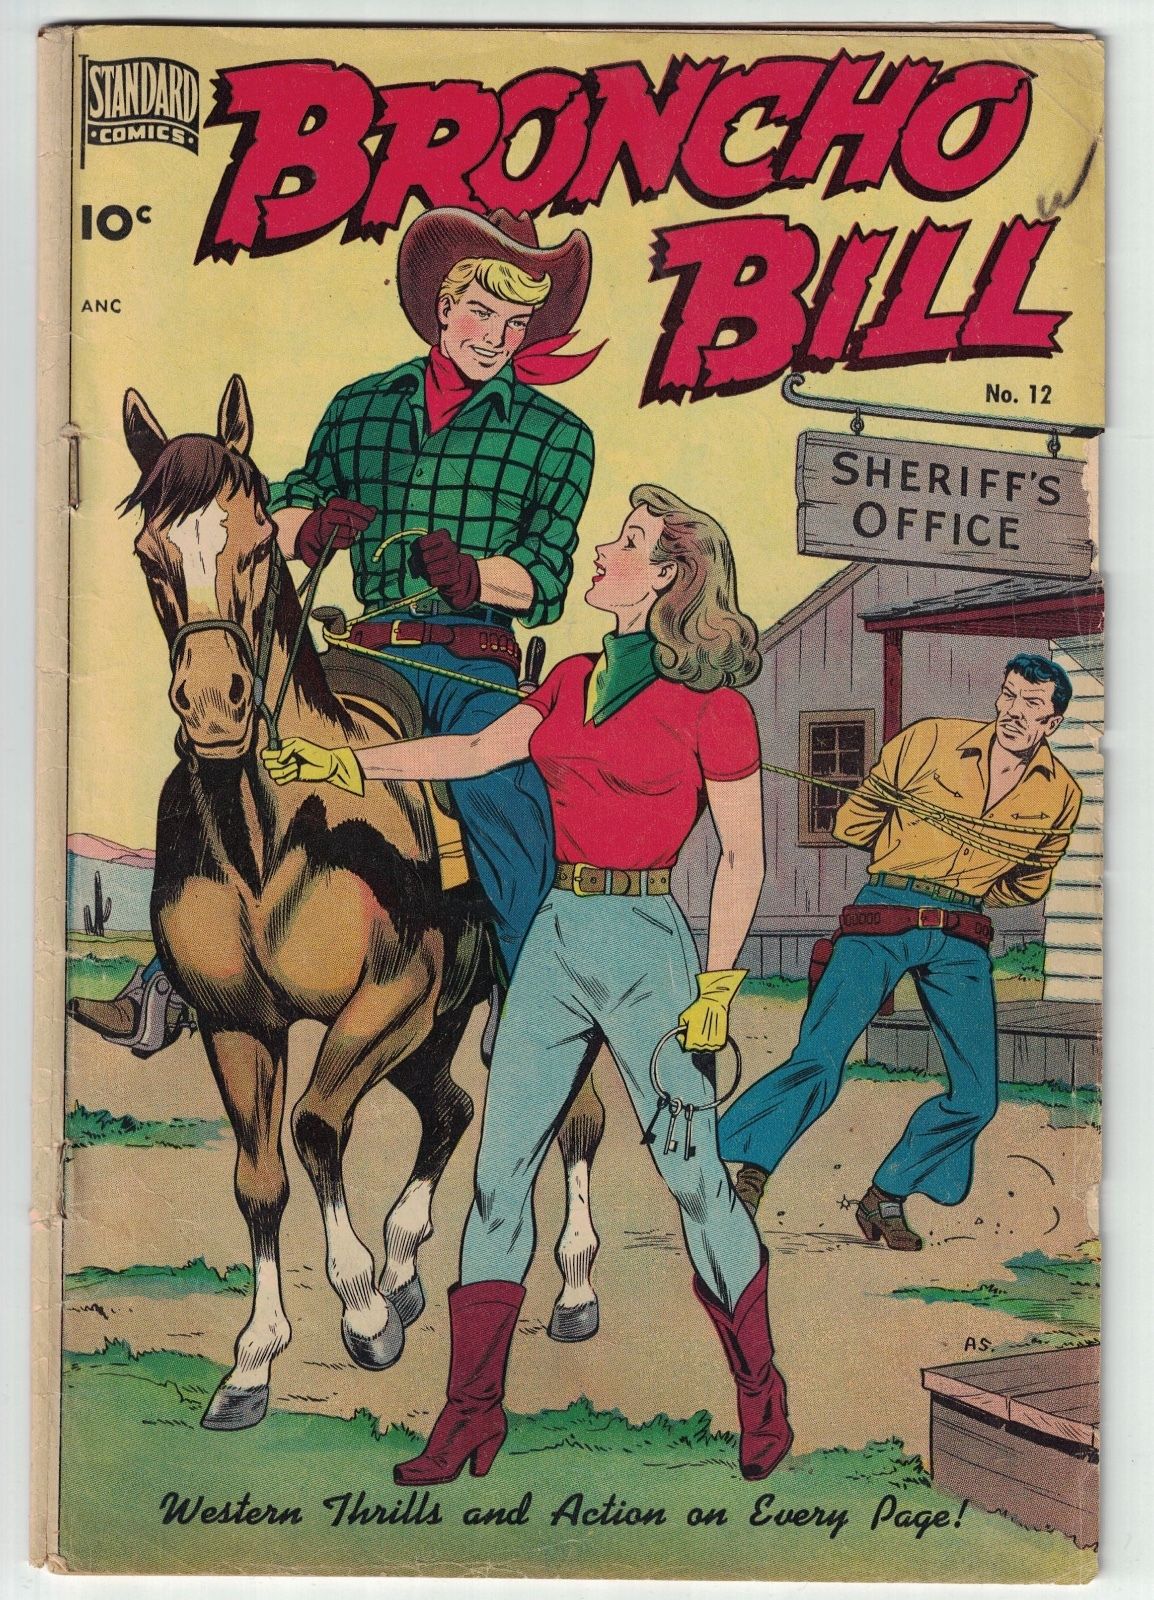 Standard Comics Broncho Bill #12 Alex Schomburg Cover Art GD/VG 3.0 August 1949